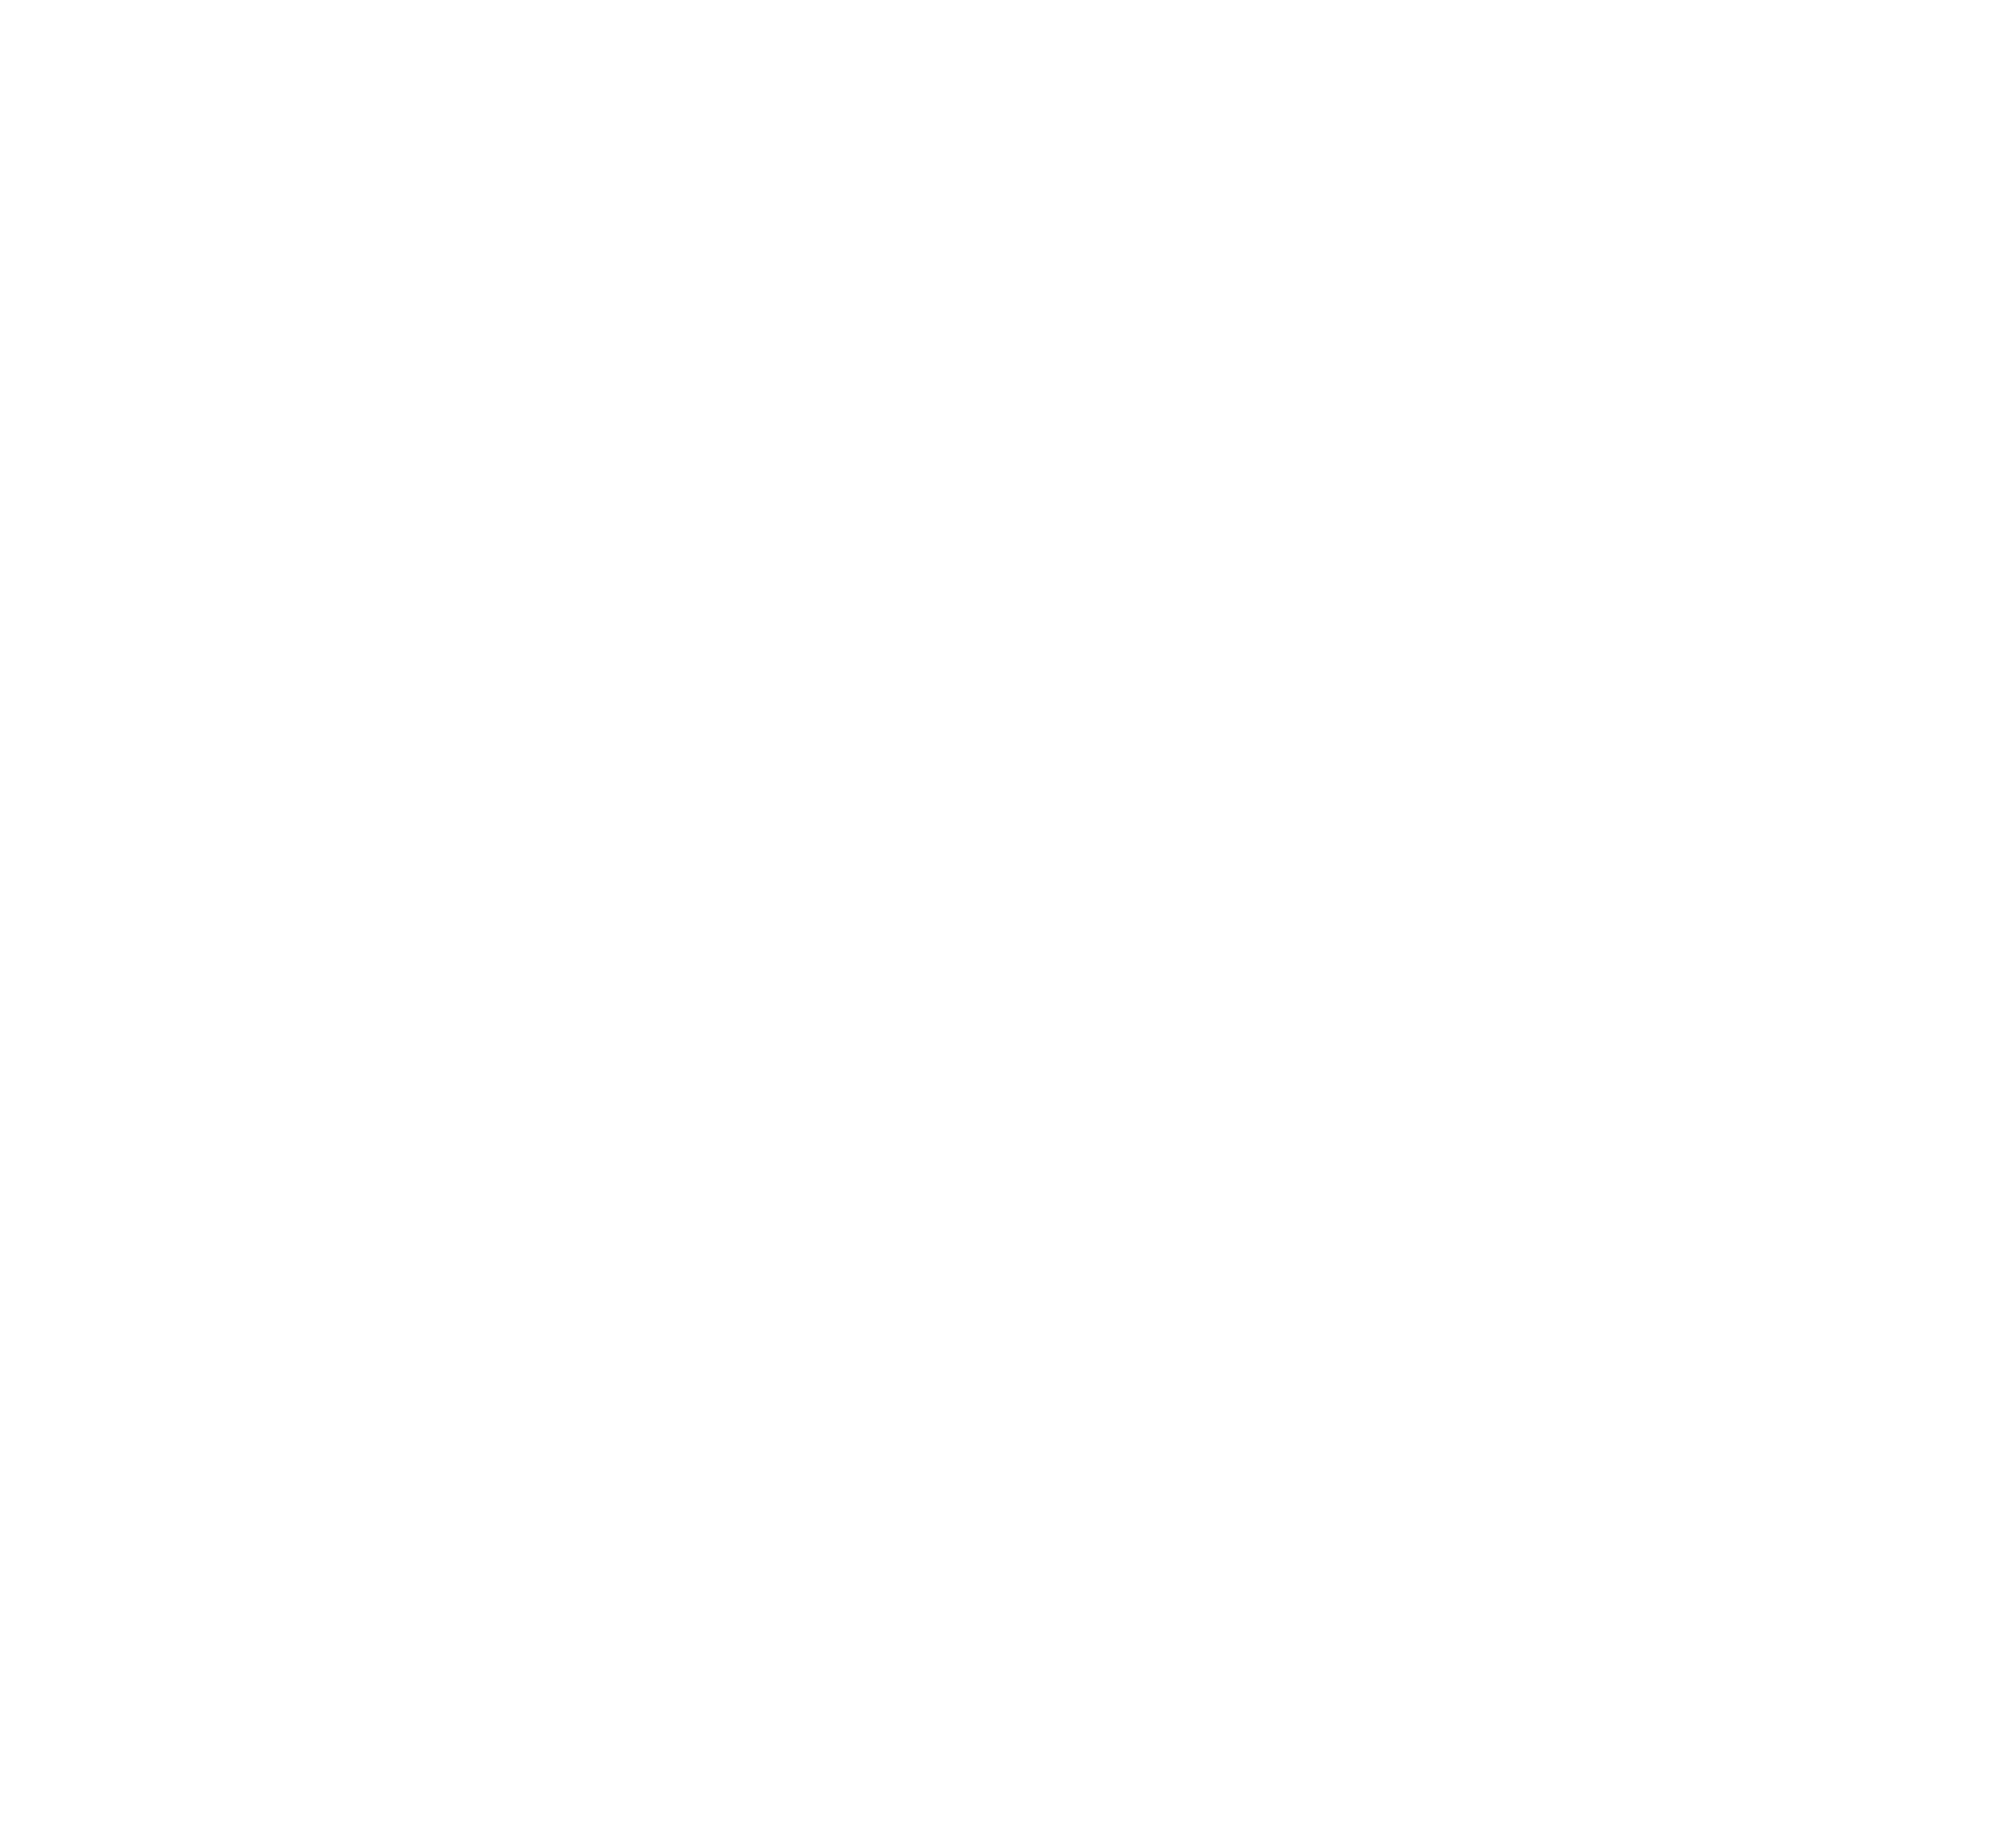  Ikona przedstawiająca trybik i symbol dolara, mająca symbolizować zakładkę zakupiony sprzęt 